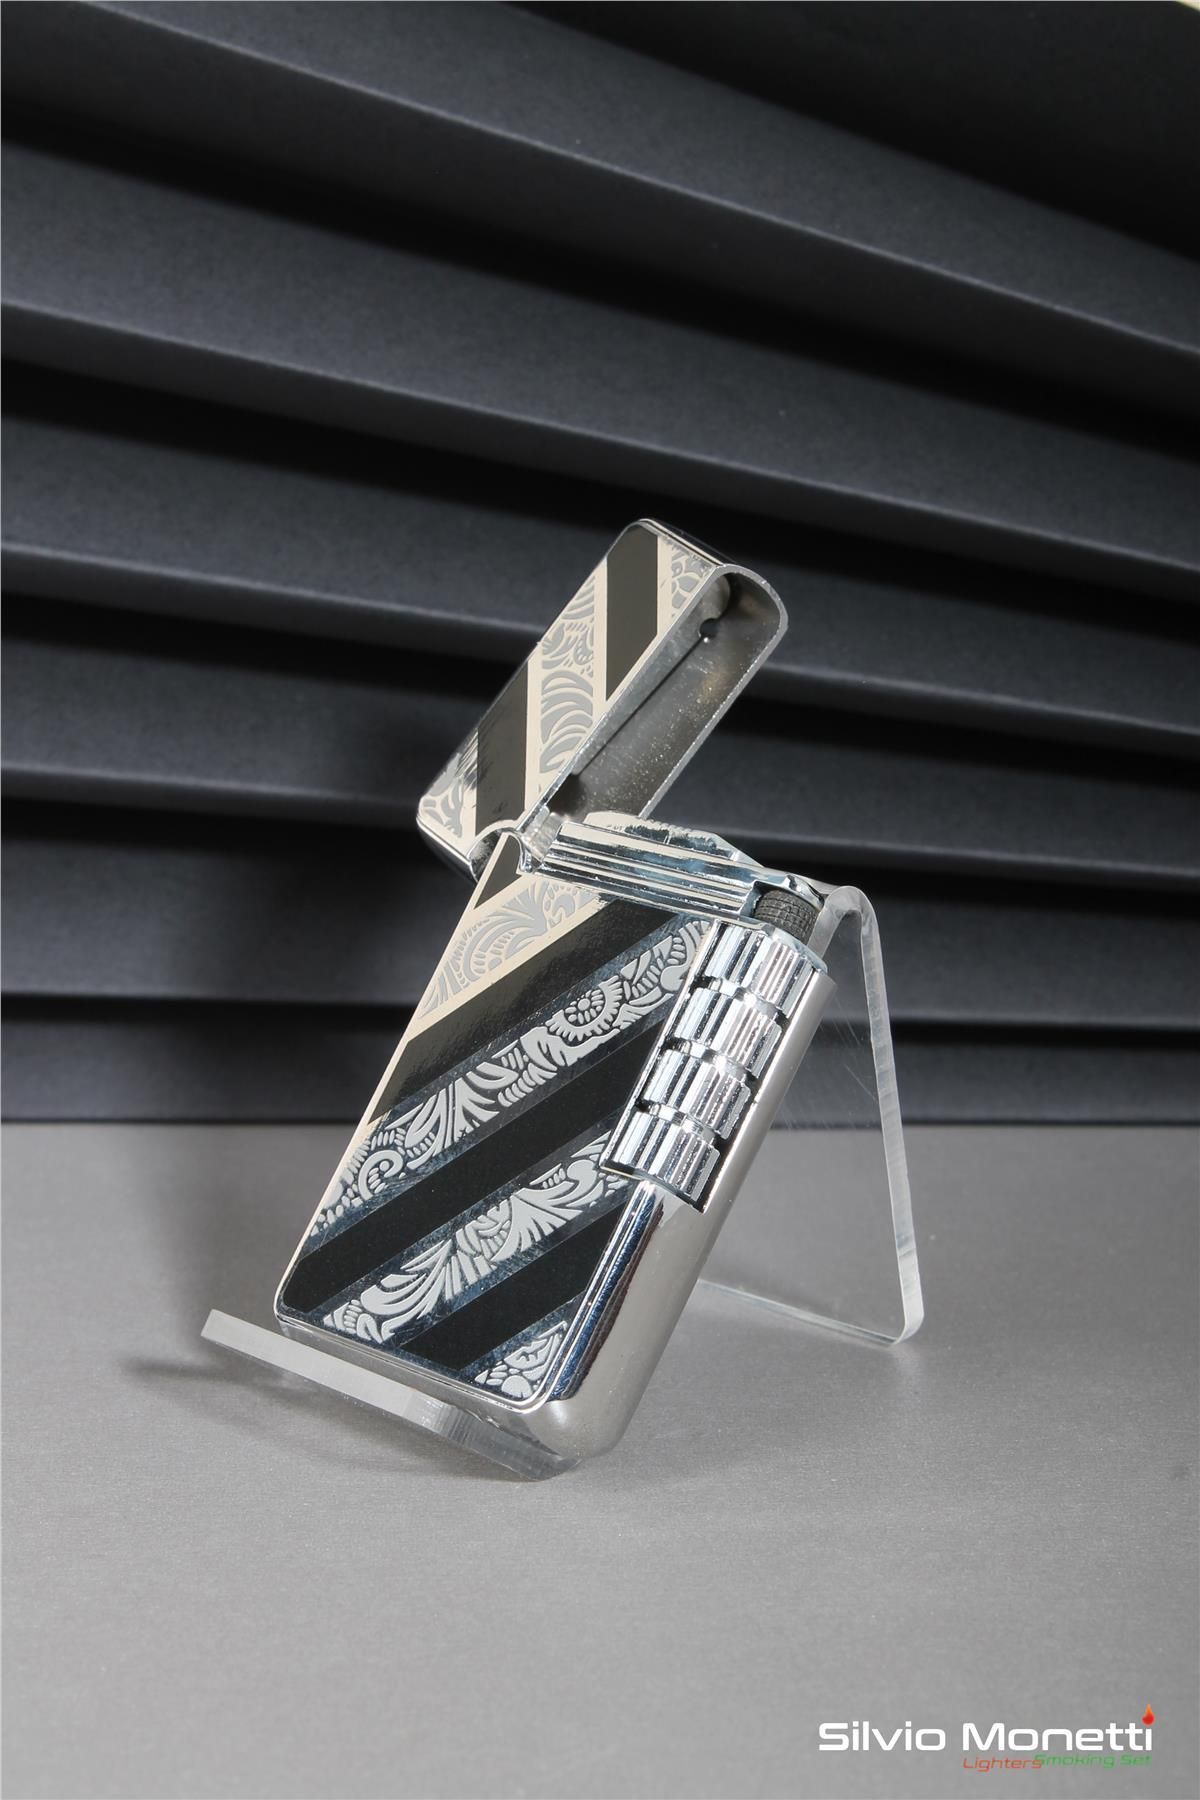 Silvio Monetti Gümüş Siyah Özel Tasarım Kapaklı Model Gazlı Çakmak 24csm813btr01